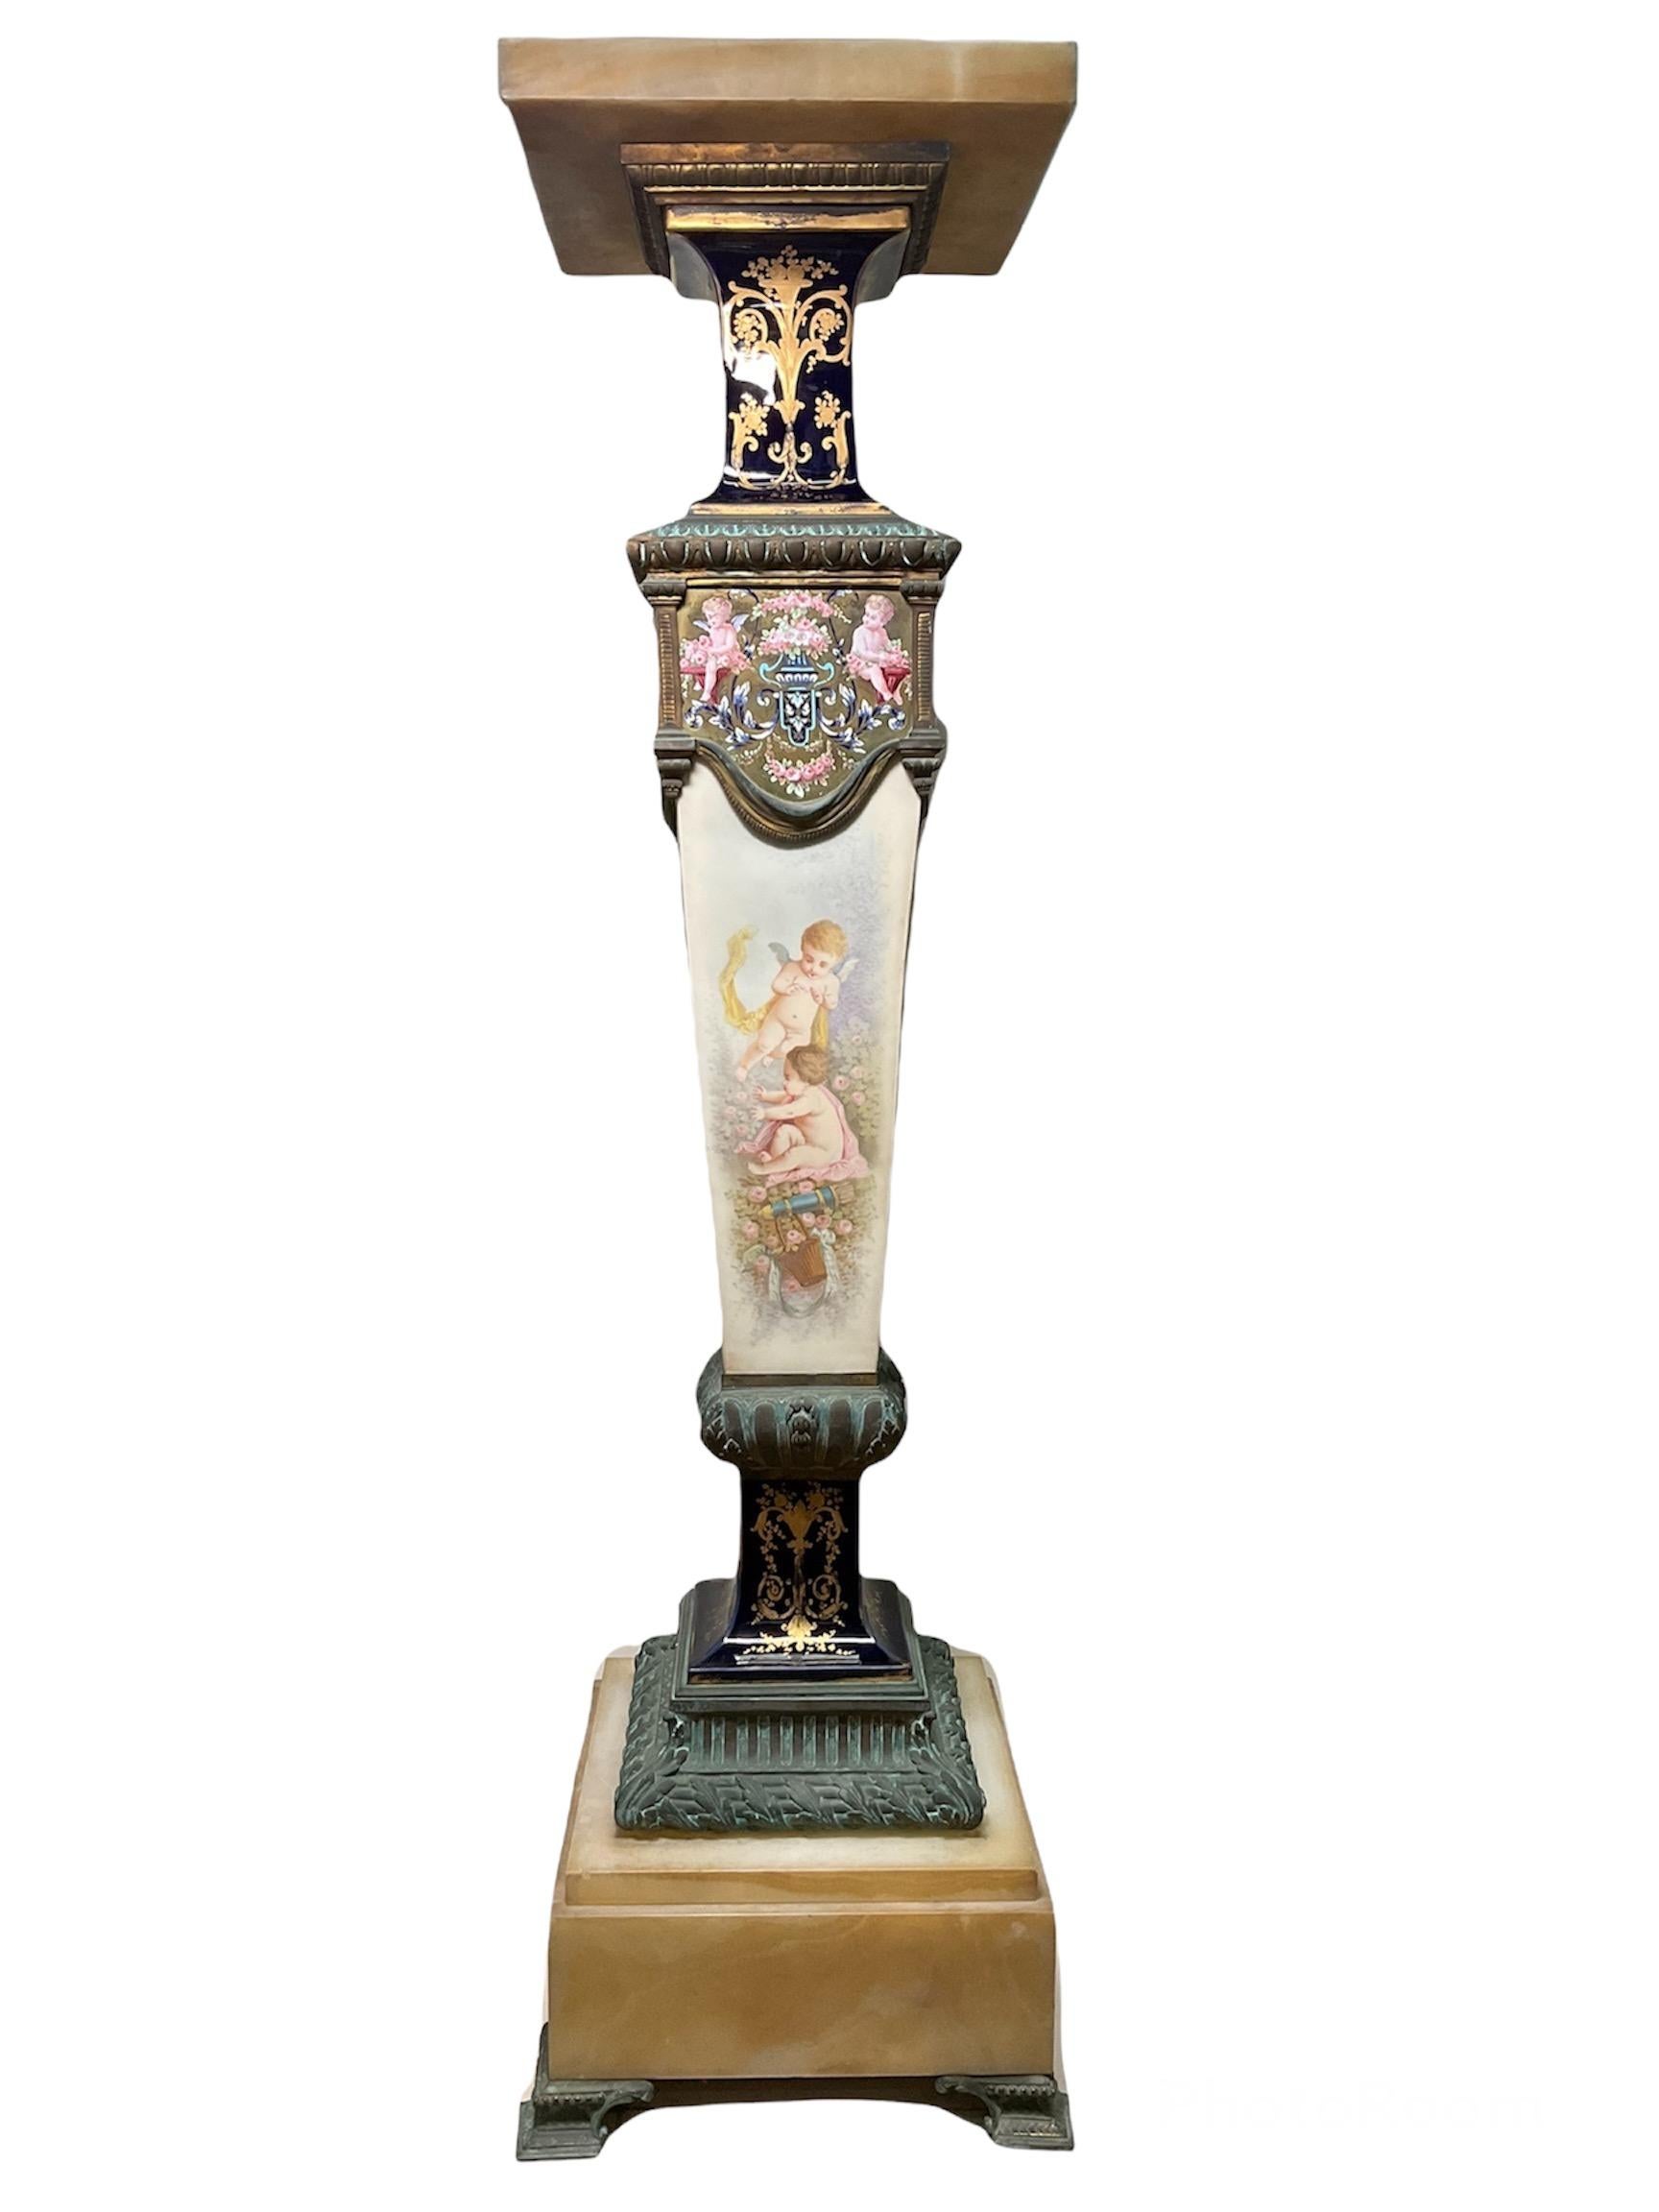 Il s'agit d'un piédestal de style Sèvres en onyx, bronze et porcelaine peinte à la main. Le piédestal est composé de huit pièces. La première pièce est le sommet carré en onyx, suivie de la deuxième pièce qui est une base carrée en bronze. Vient